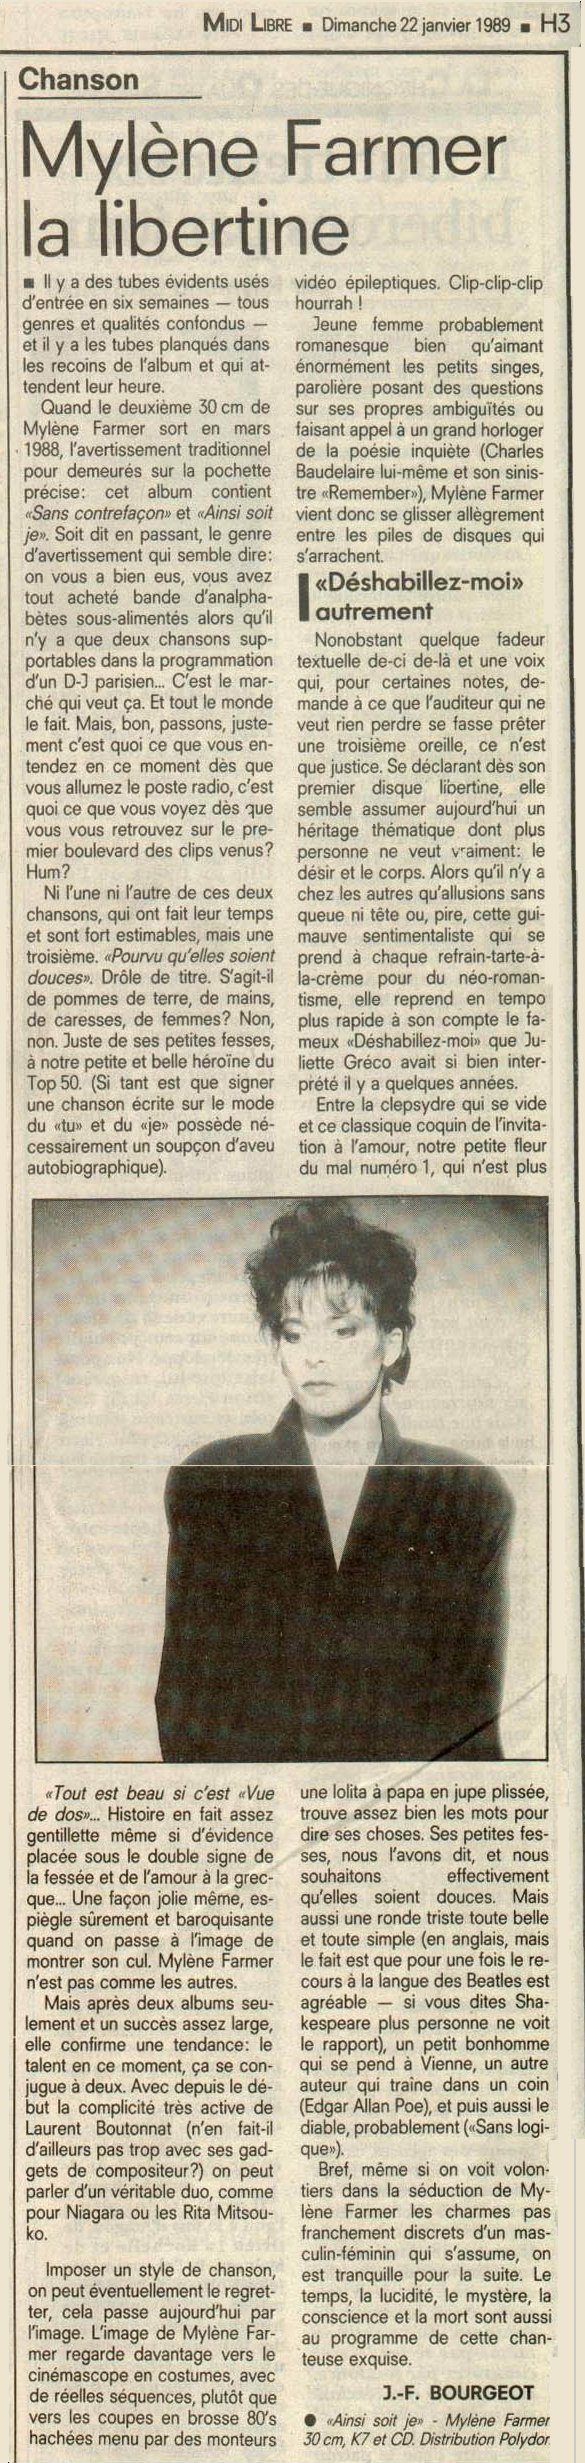 Midi Libre 22 janvier 1989 22 janvier 1989